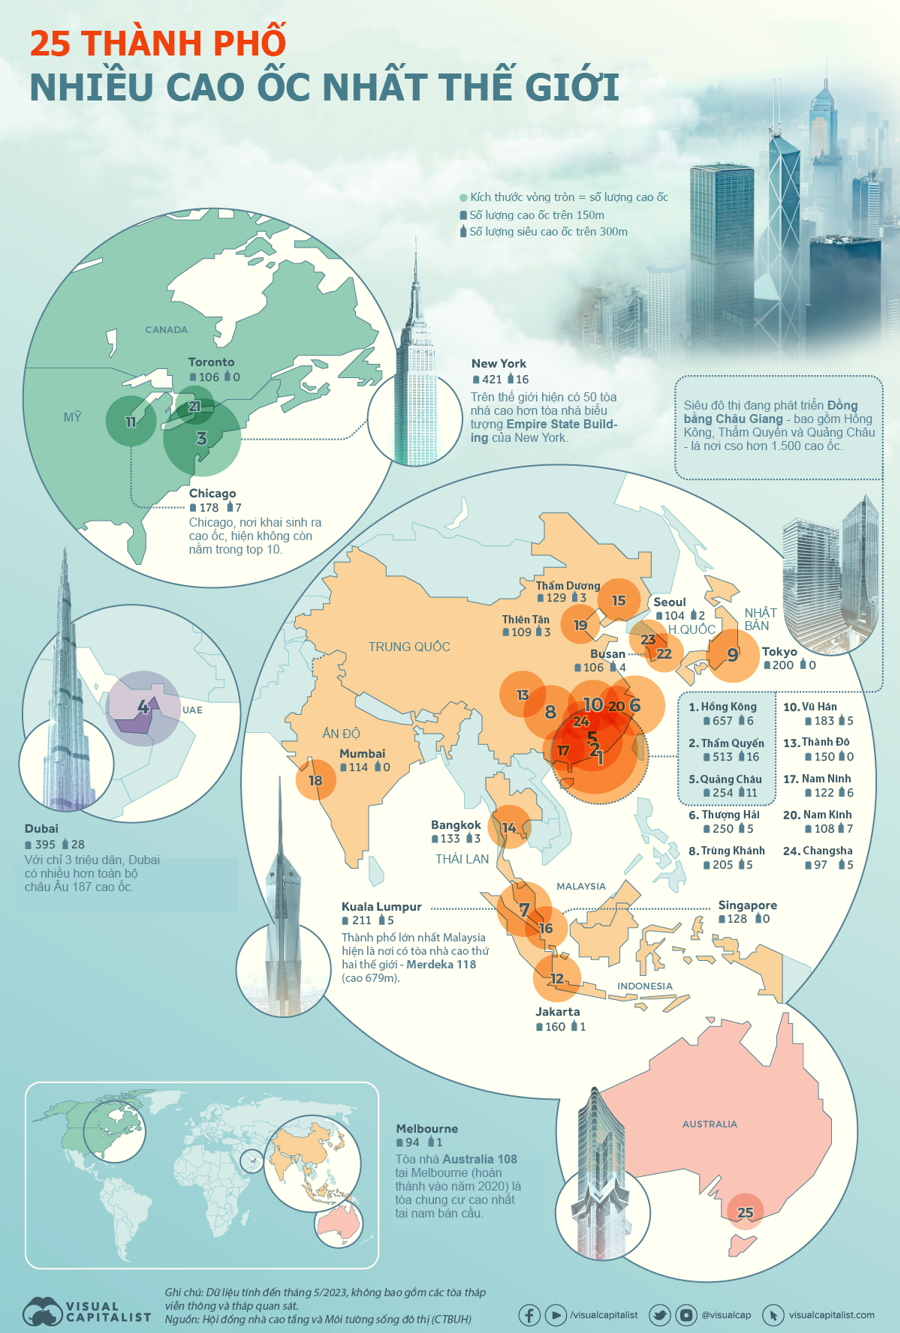 Top 25 thành phố có nhiều cao ốc nhất thế giới, Trung Quốc chiếm đa số - Ảnh 1